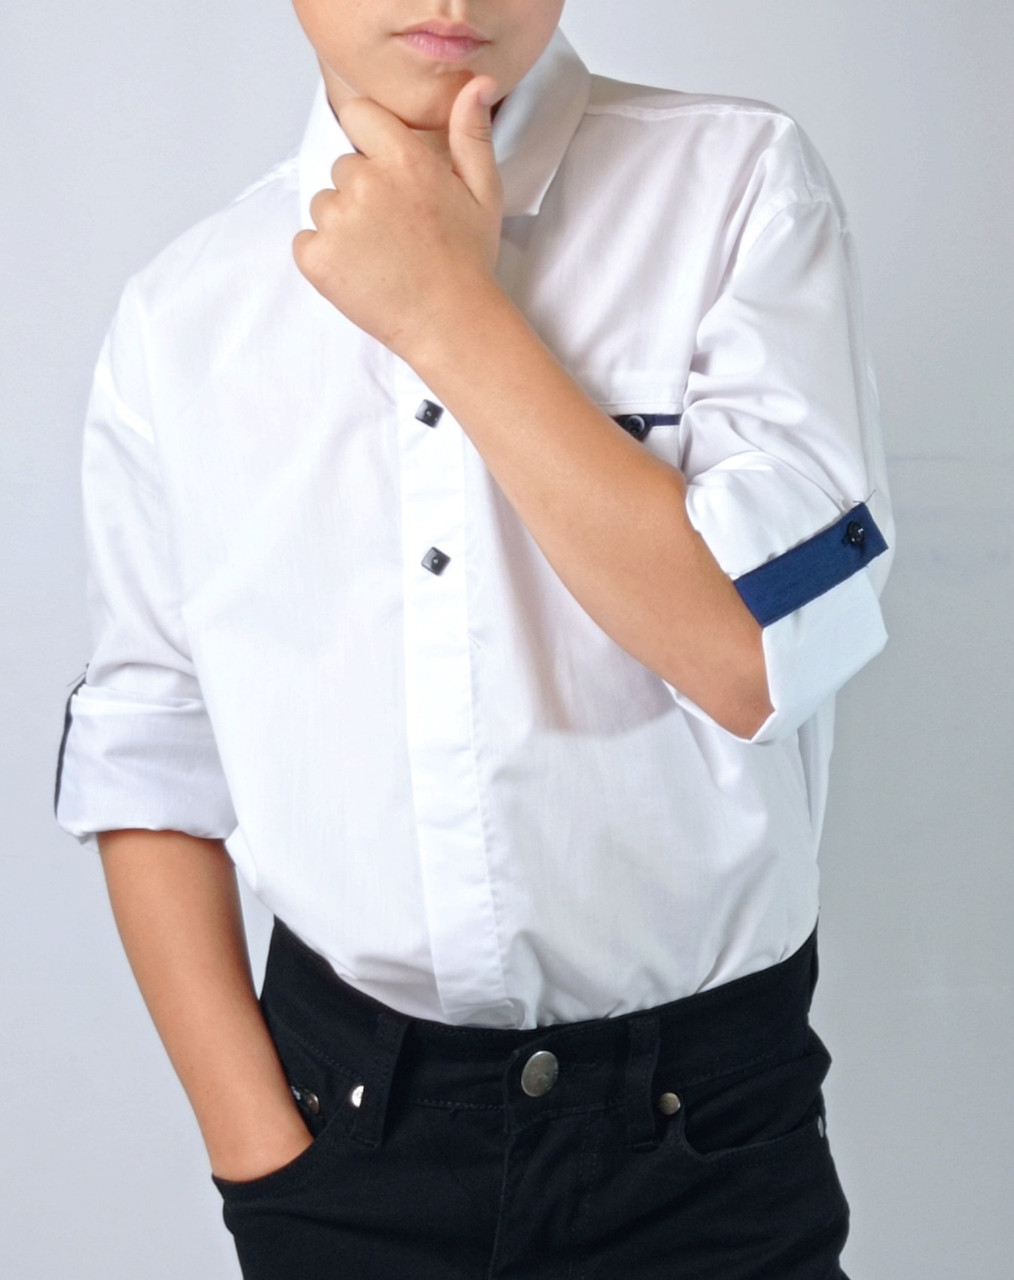 Біла сорочка трансформер для хлопця підлітка в школу